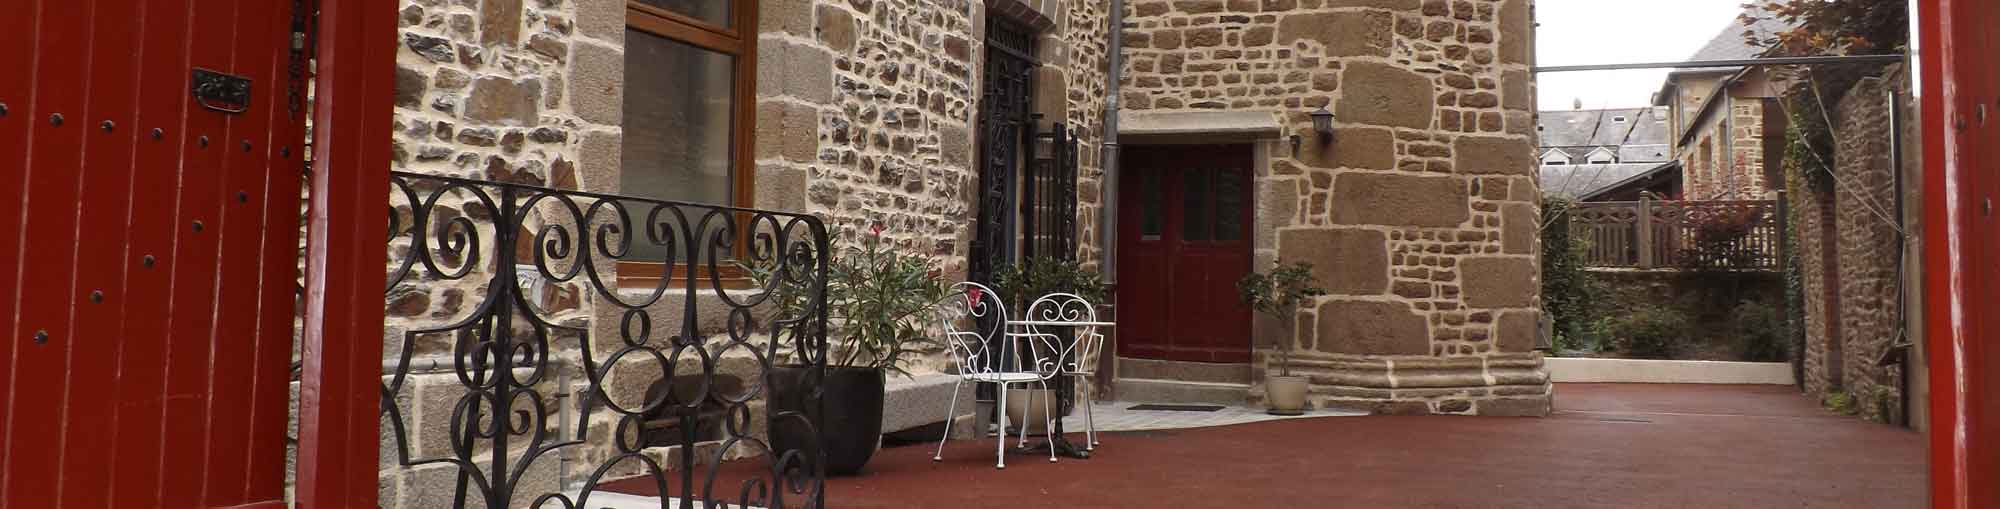 Bienvenue à l'Hôtel Lariboisière à Fougères, chambres d'hôtes, gìte et location de chambres meublées